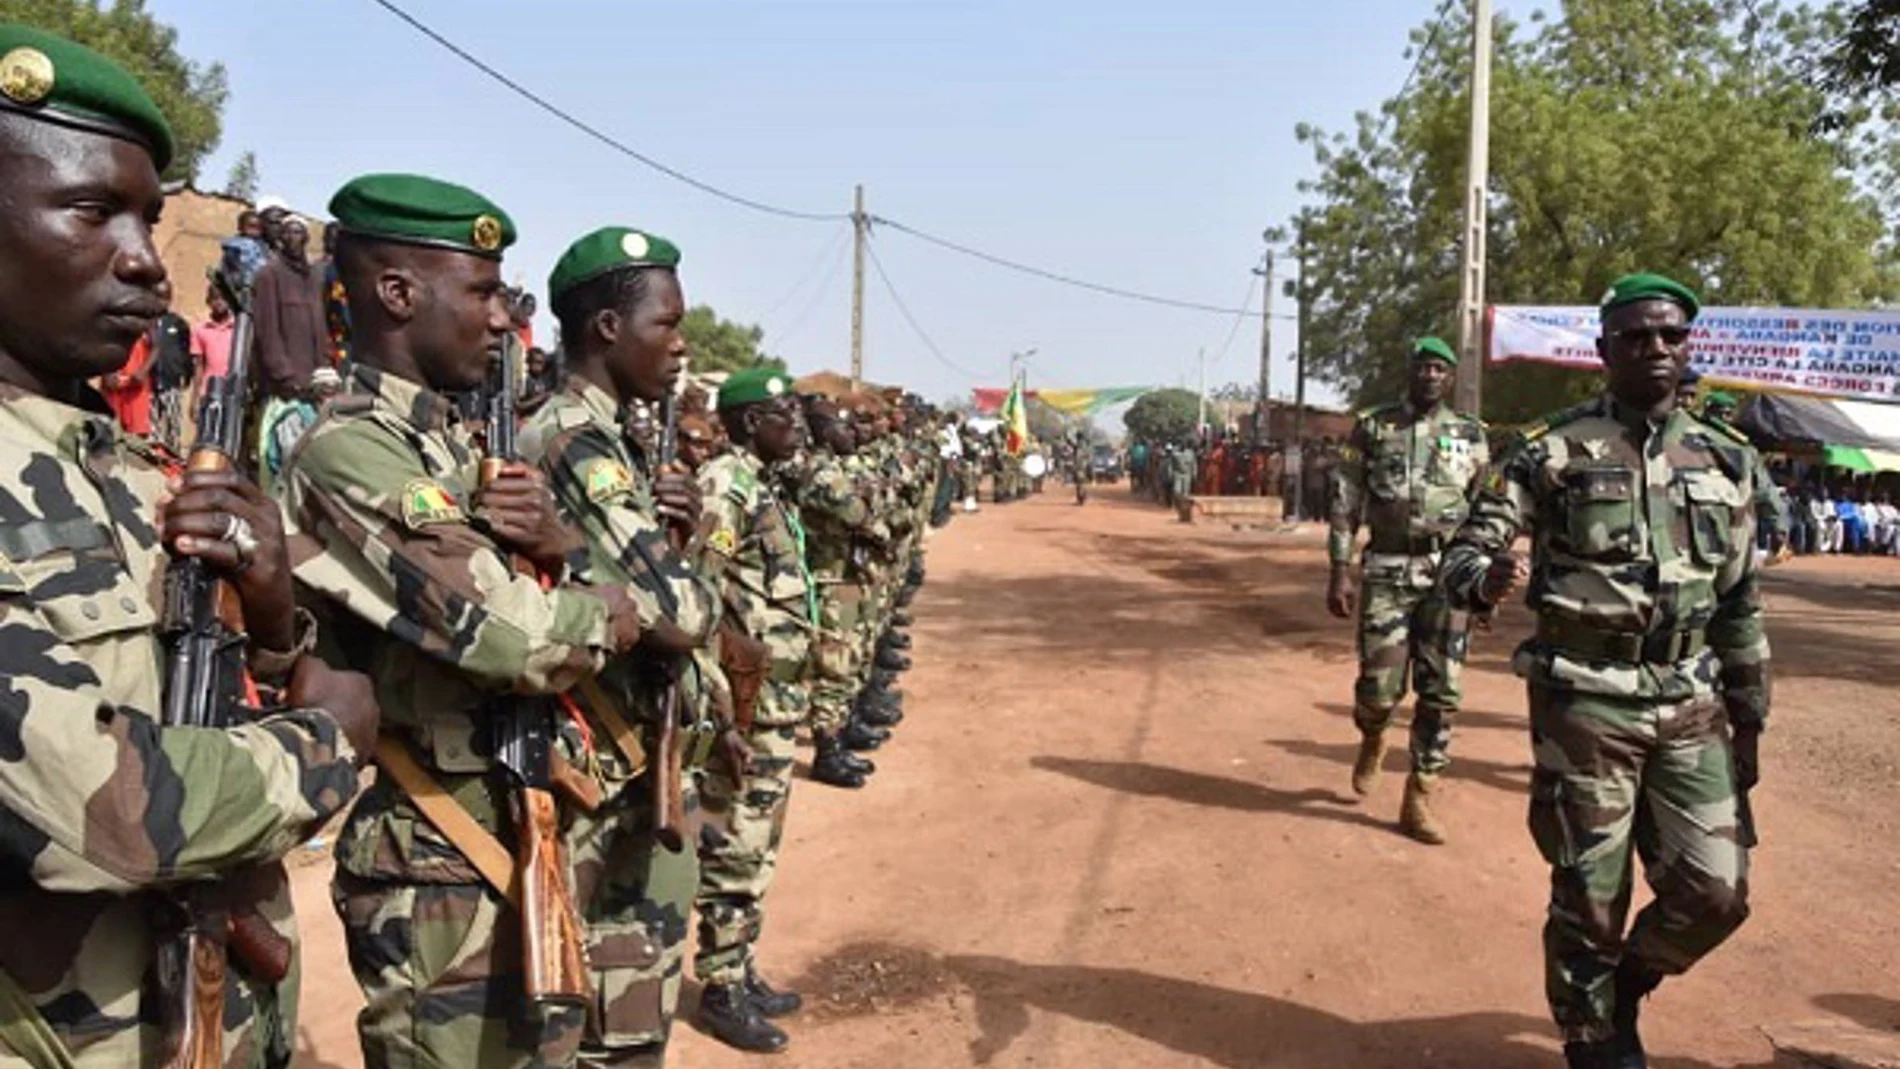 Malí.- Malí destruye "importantes bases logísticas" de "terroristas" en operaciones con Burkina Faso y Níger